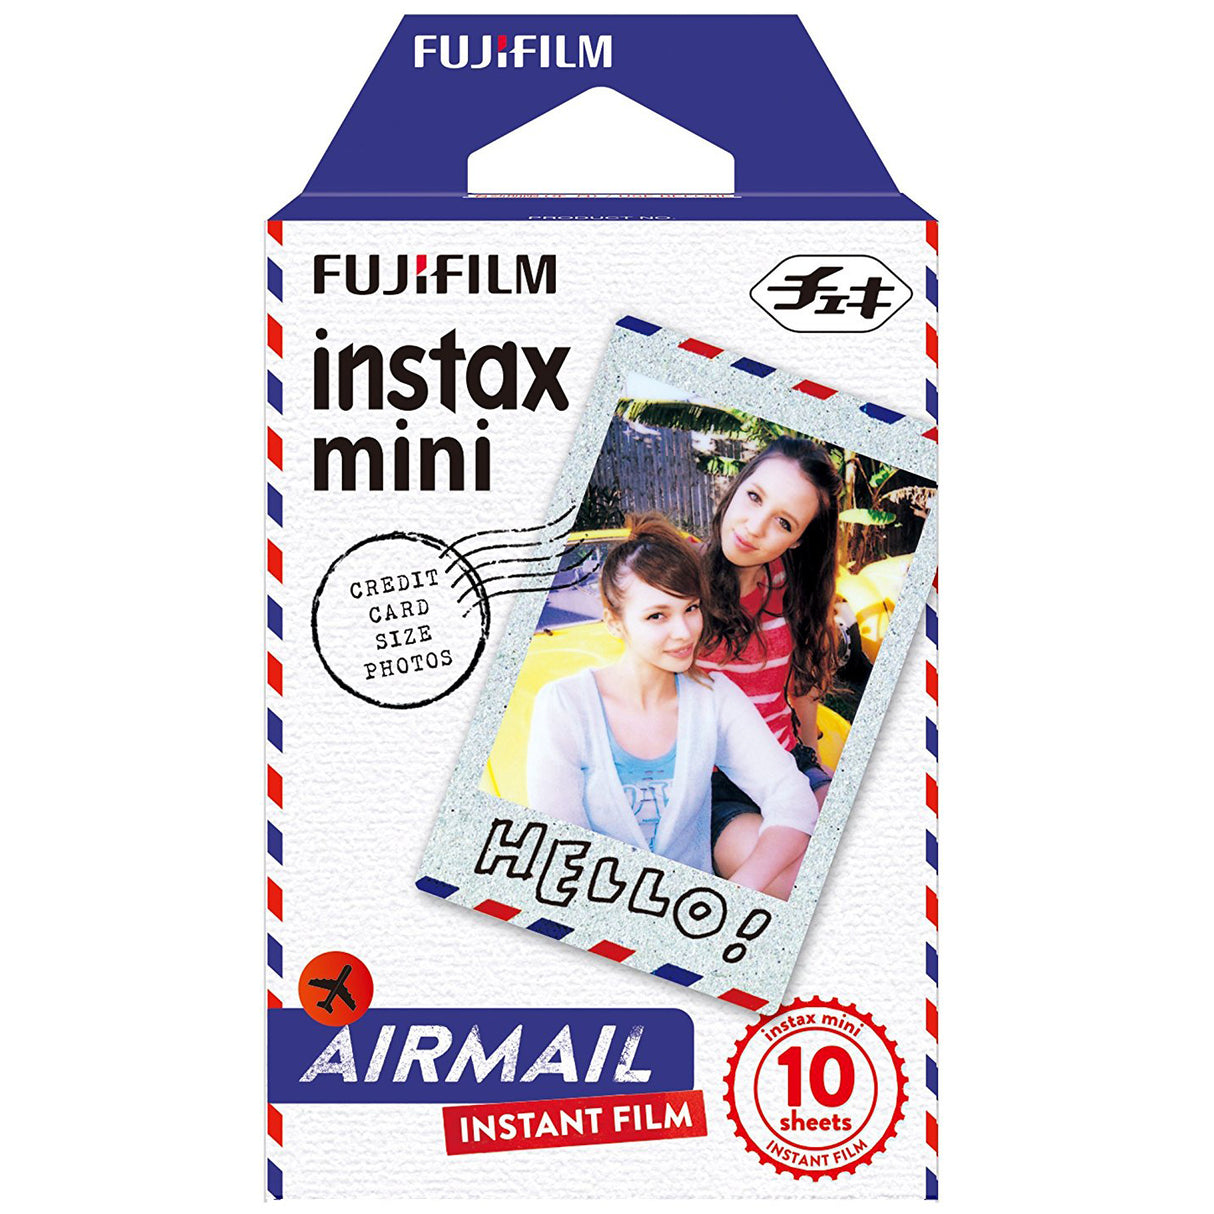 FUJIFILM Instax Mini 10x1 Instant Film Airmail